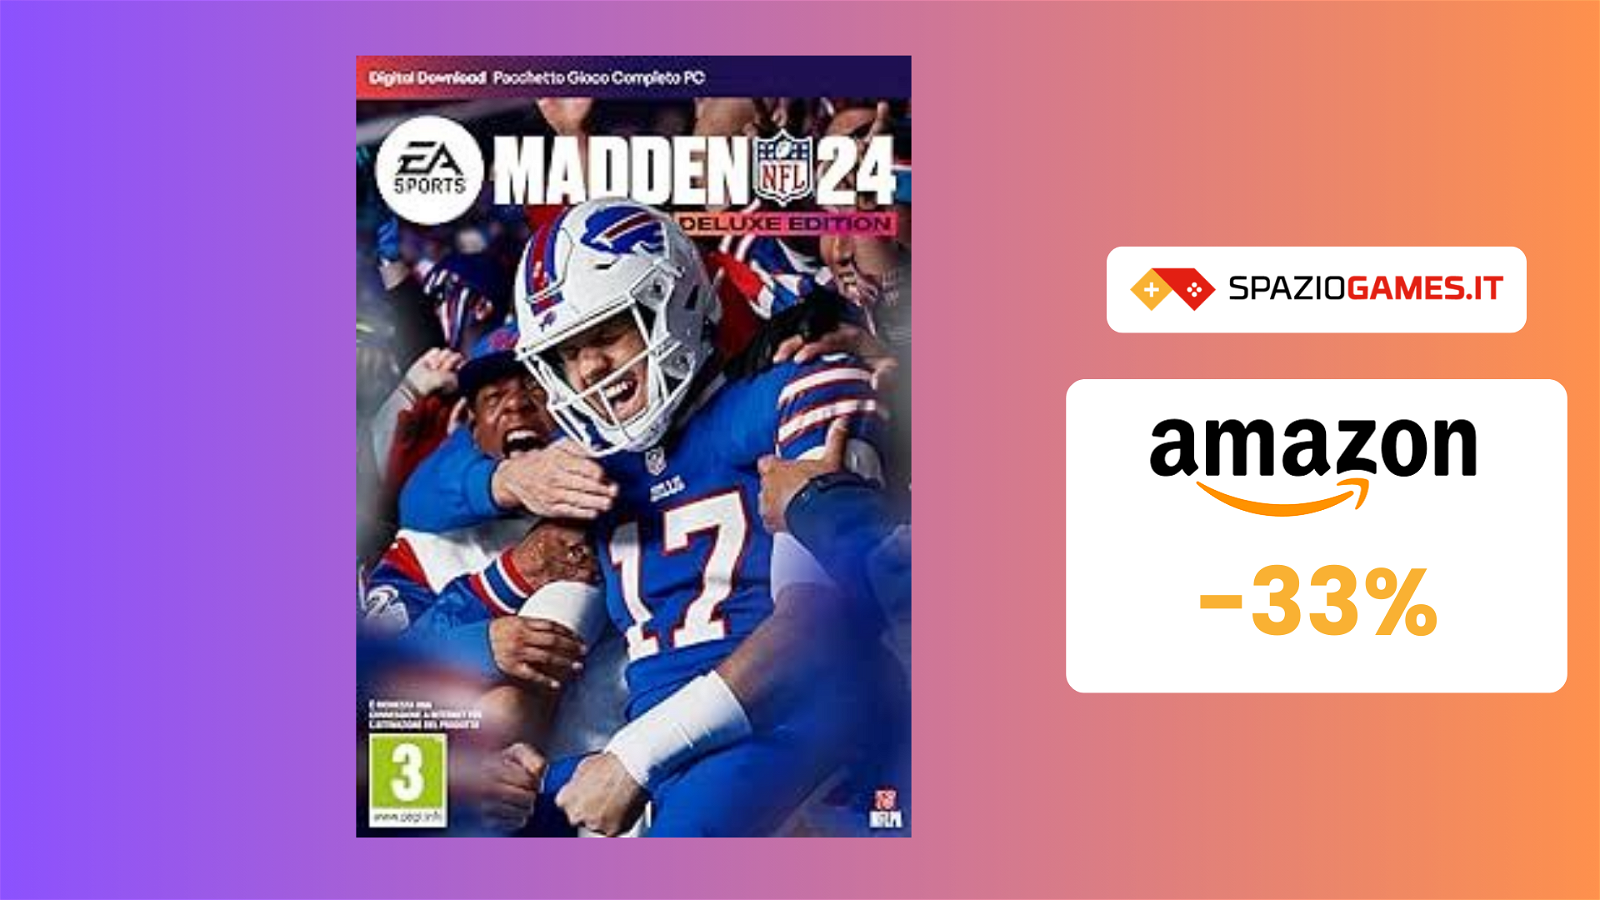 Prezzo TOP per Madden NFL 24 - Deluxe Edition: 20€!